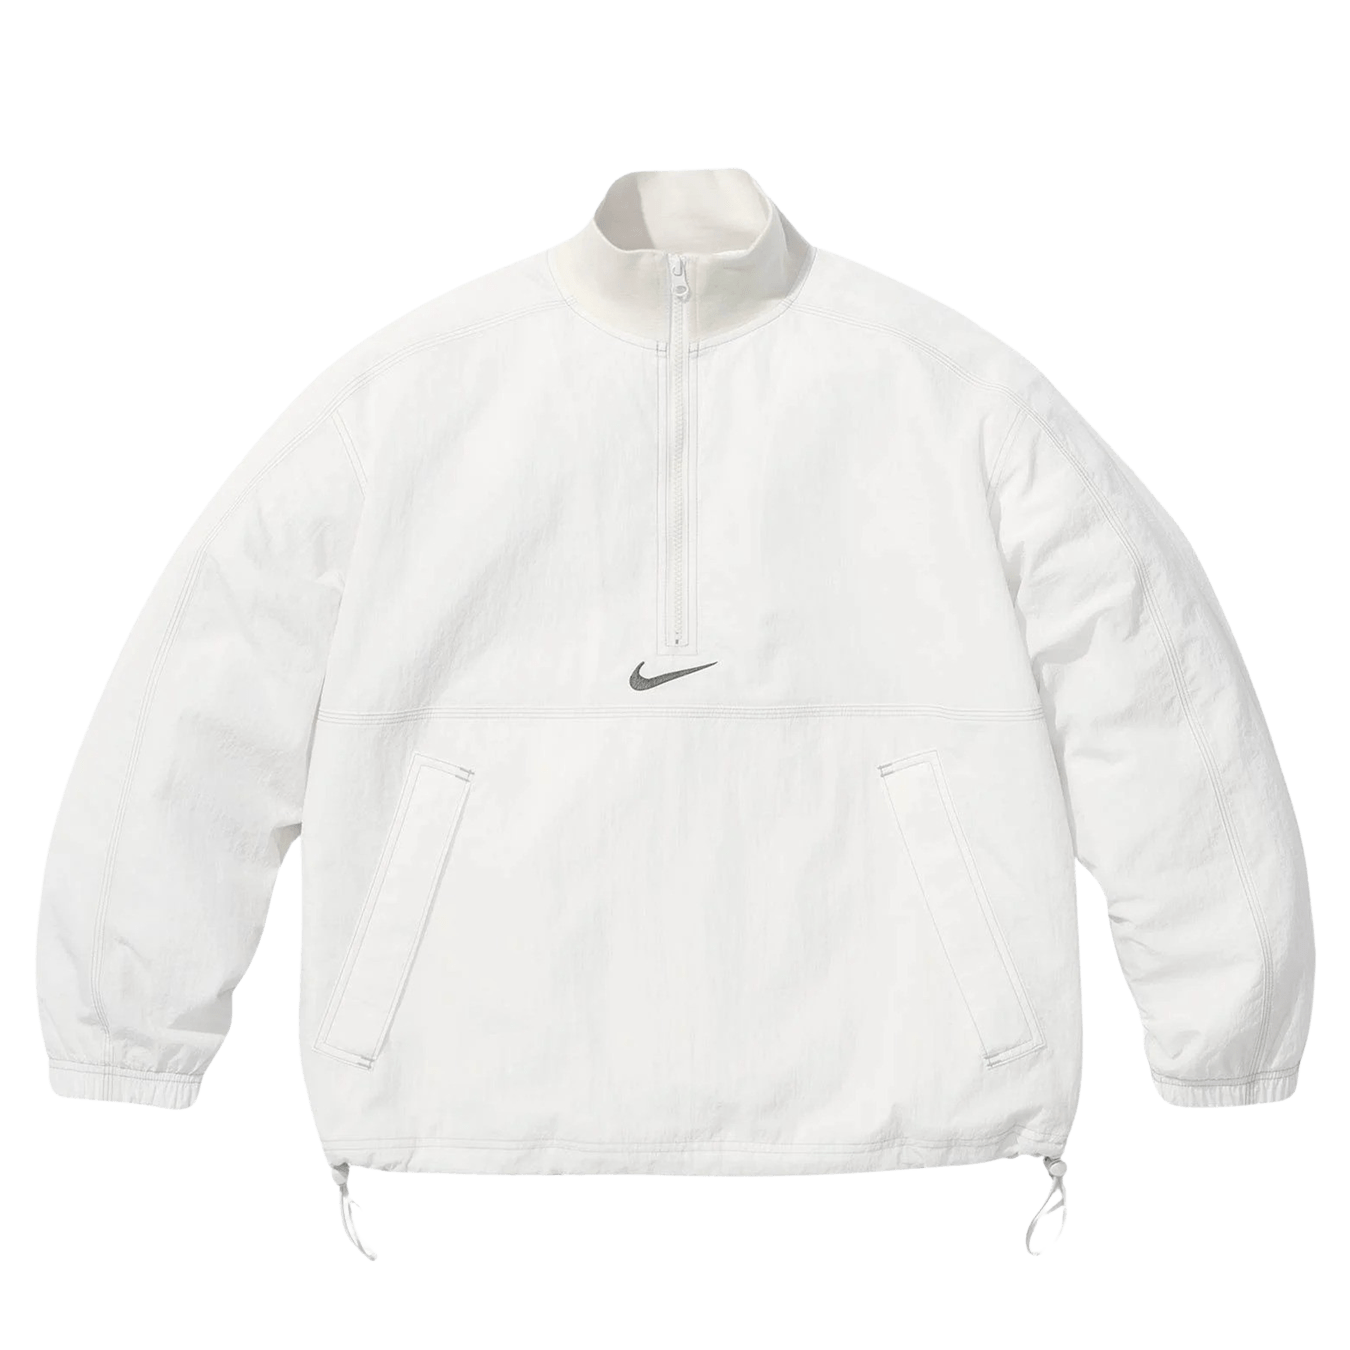 Supreme x Nike Ripstop Pullover 'White'